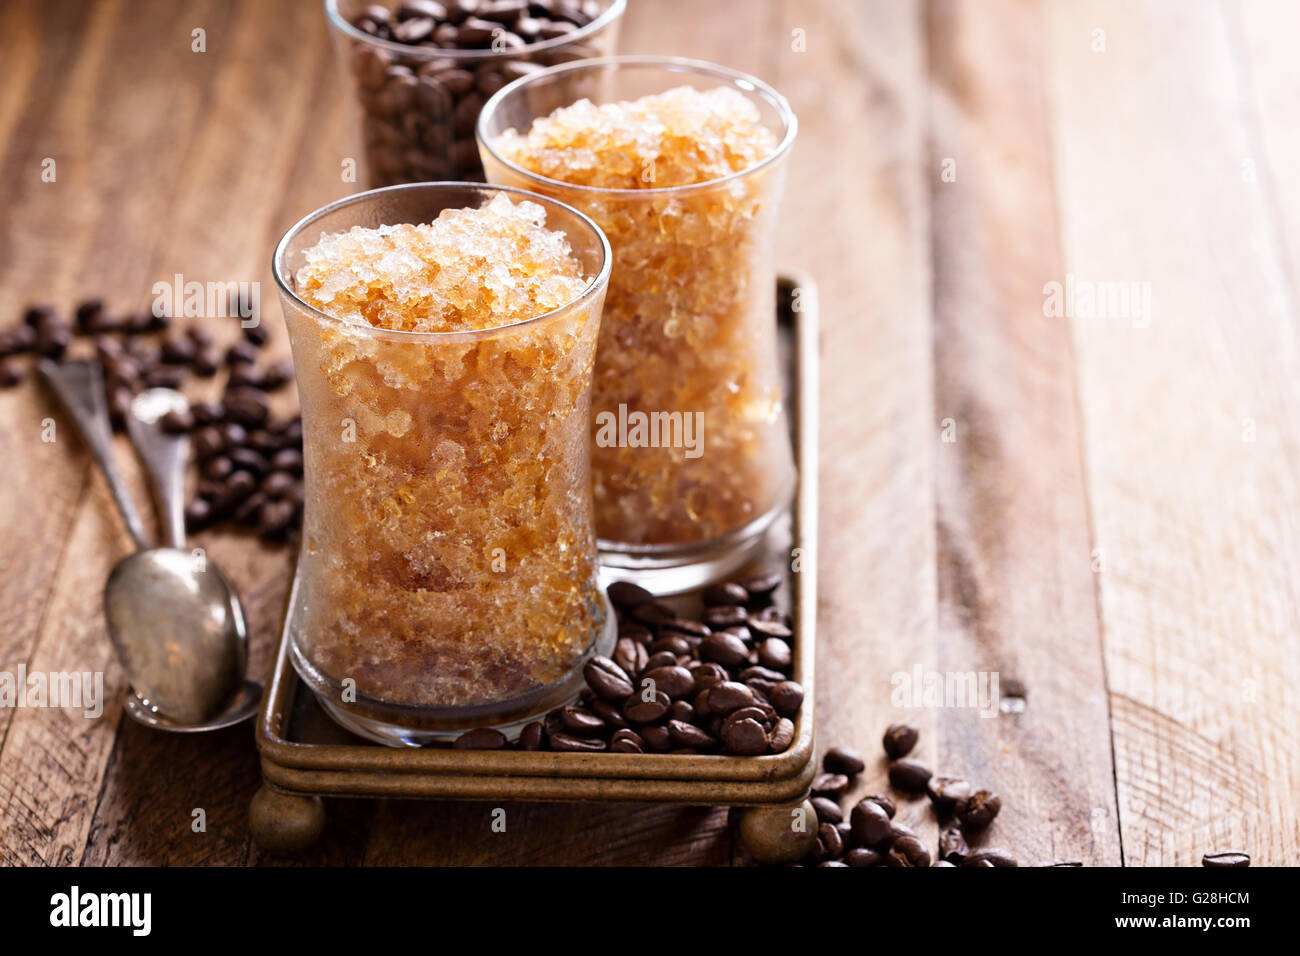 Coffee granita in small glasses Stock Photo - Alamy